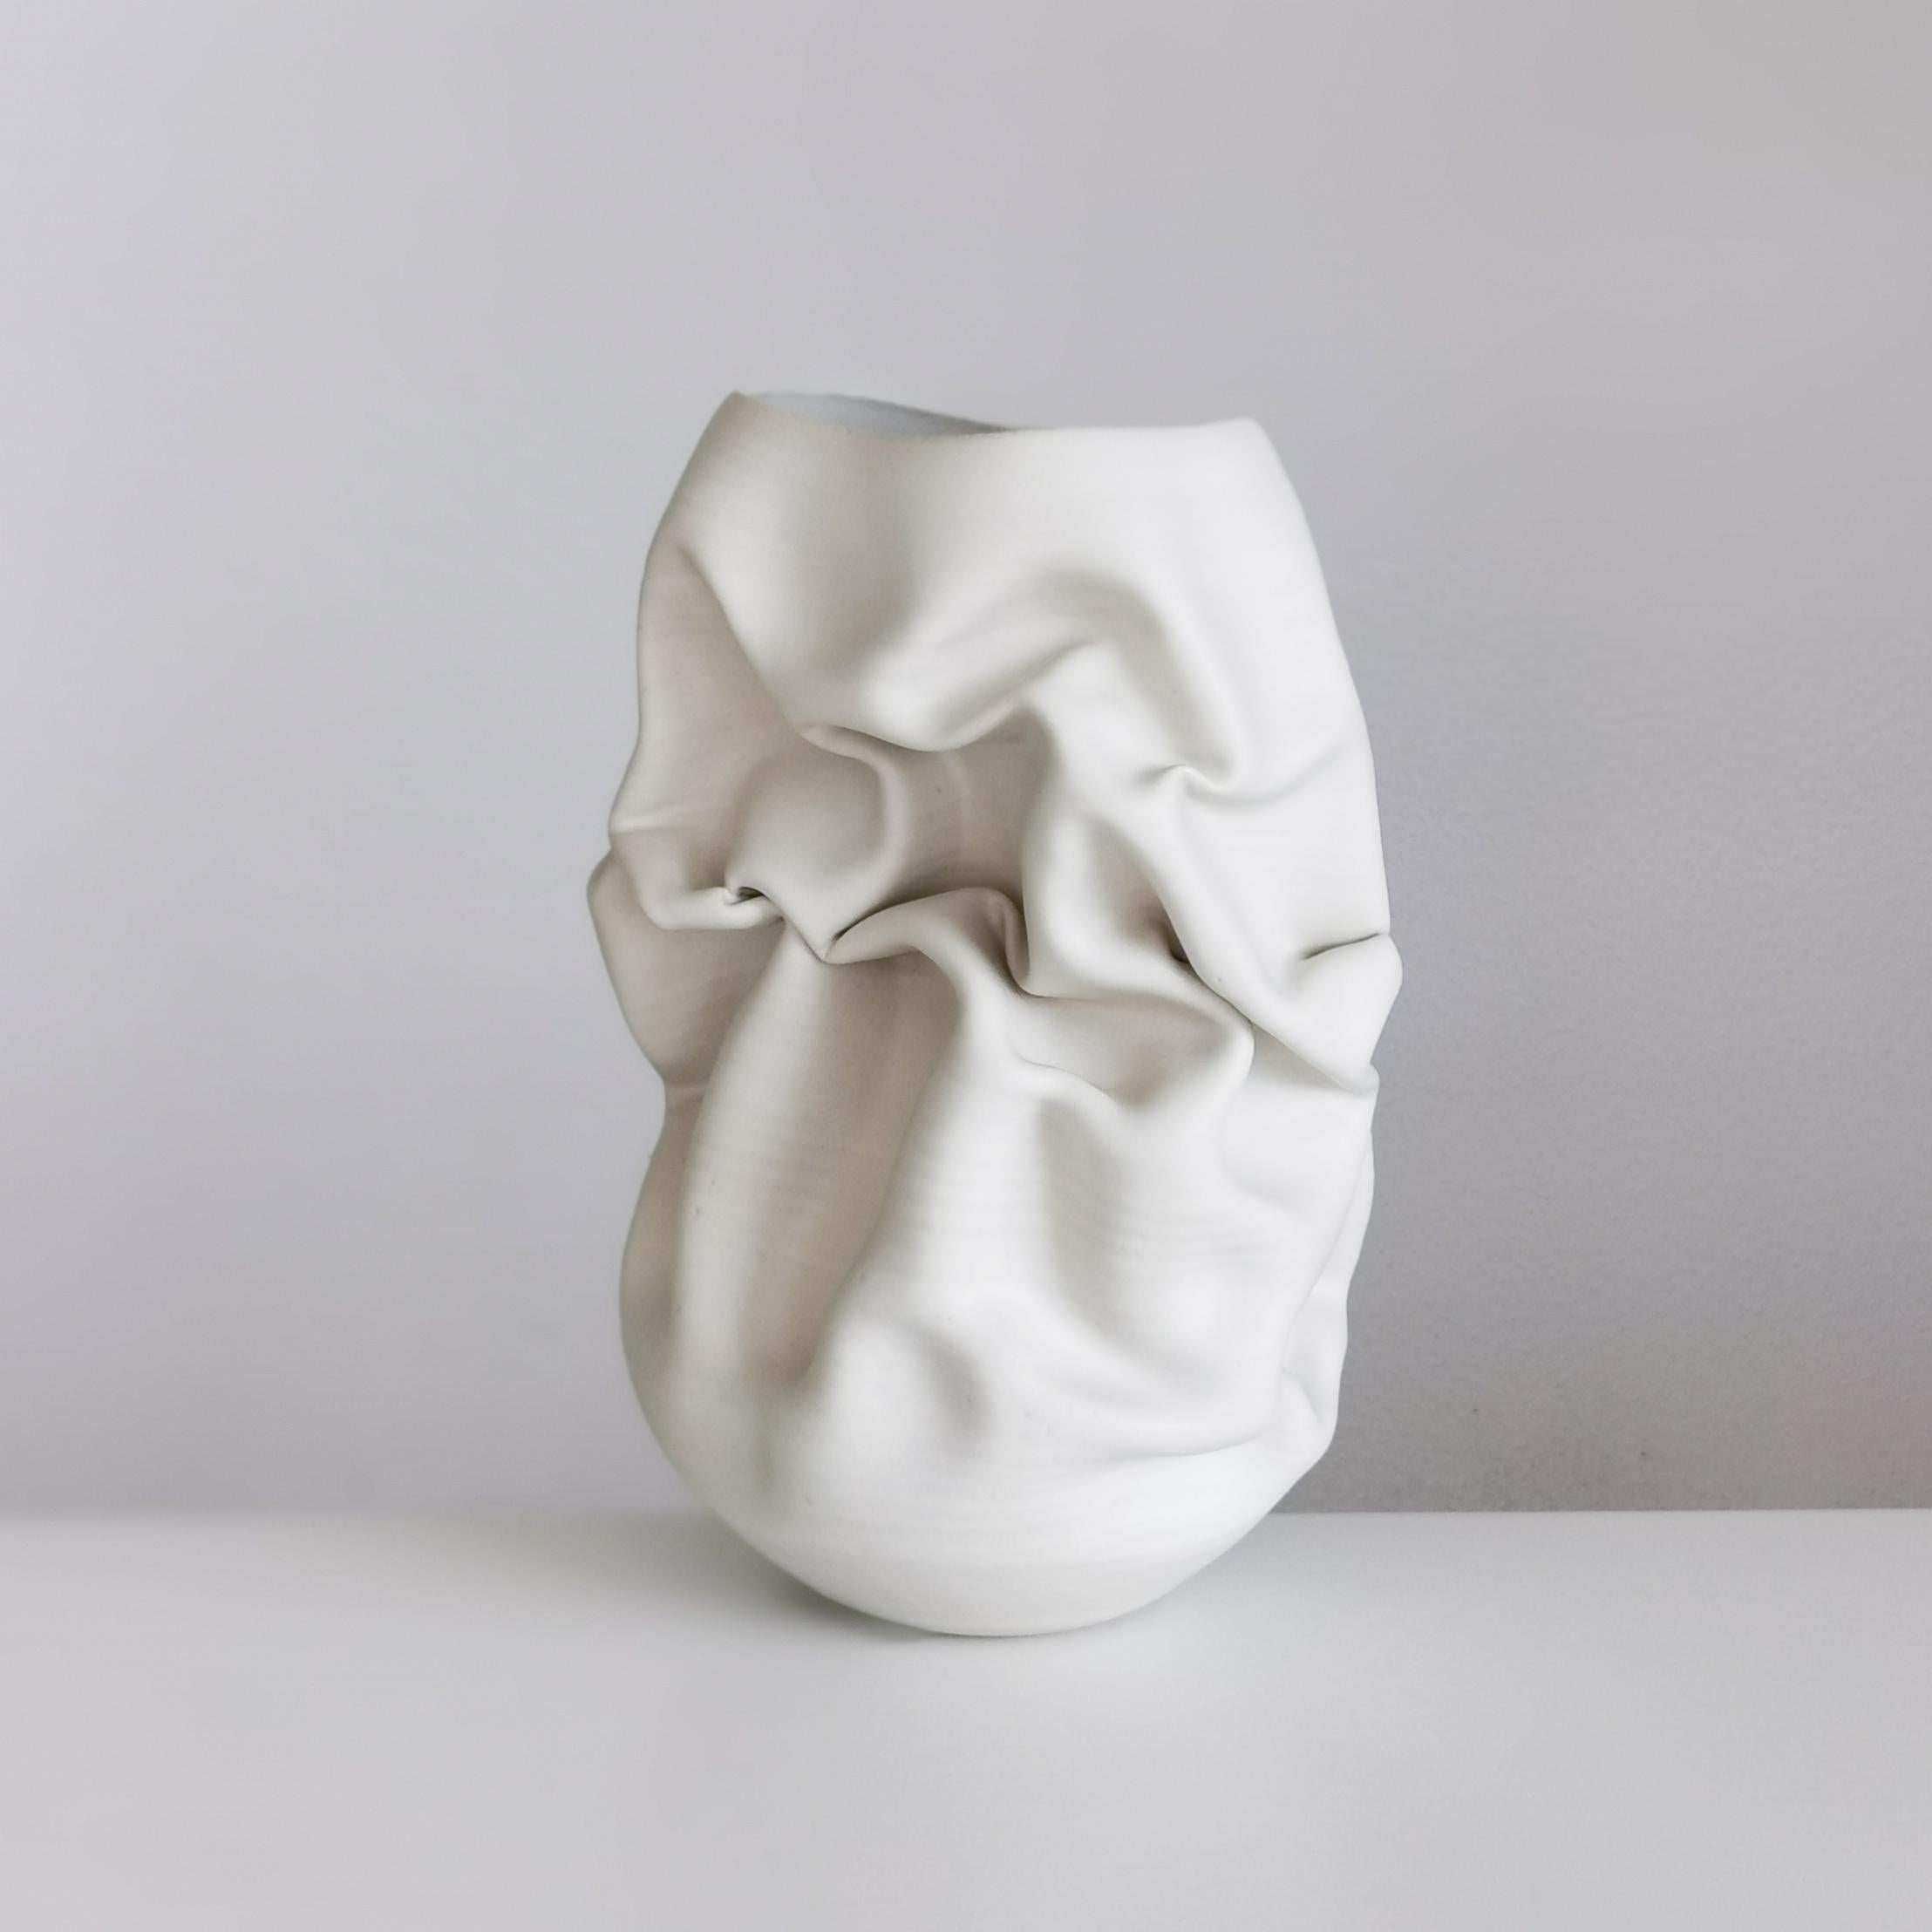 Organic Modern Ceramic Sculpture Vessel, N. 50 Medium Tall White Crumpled Form, Objet d'Art